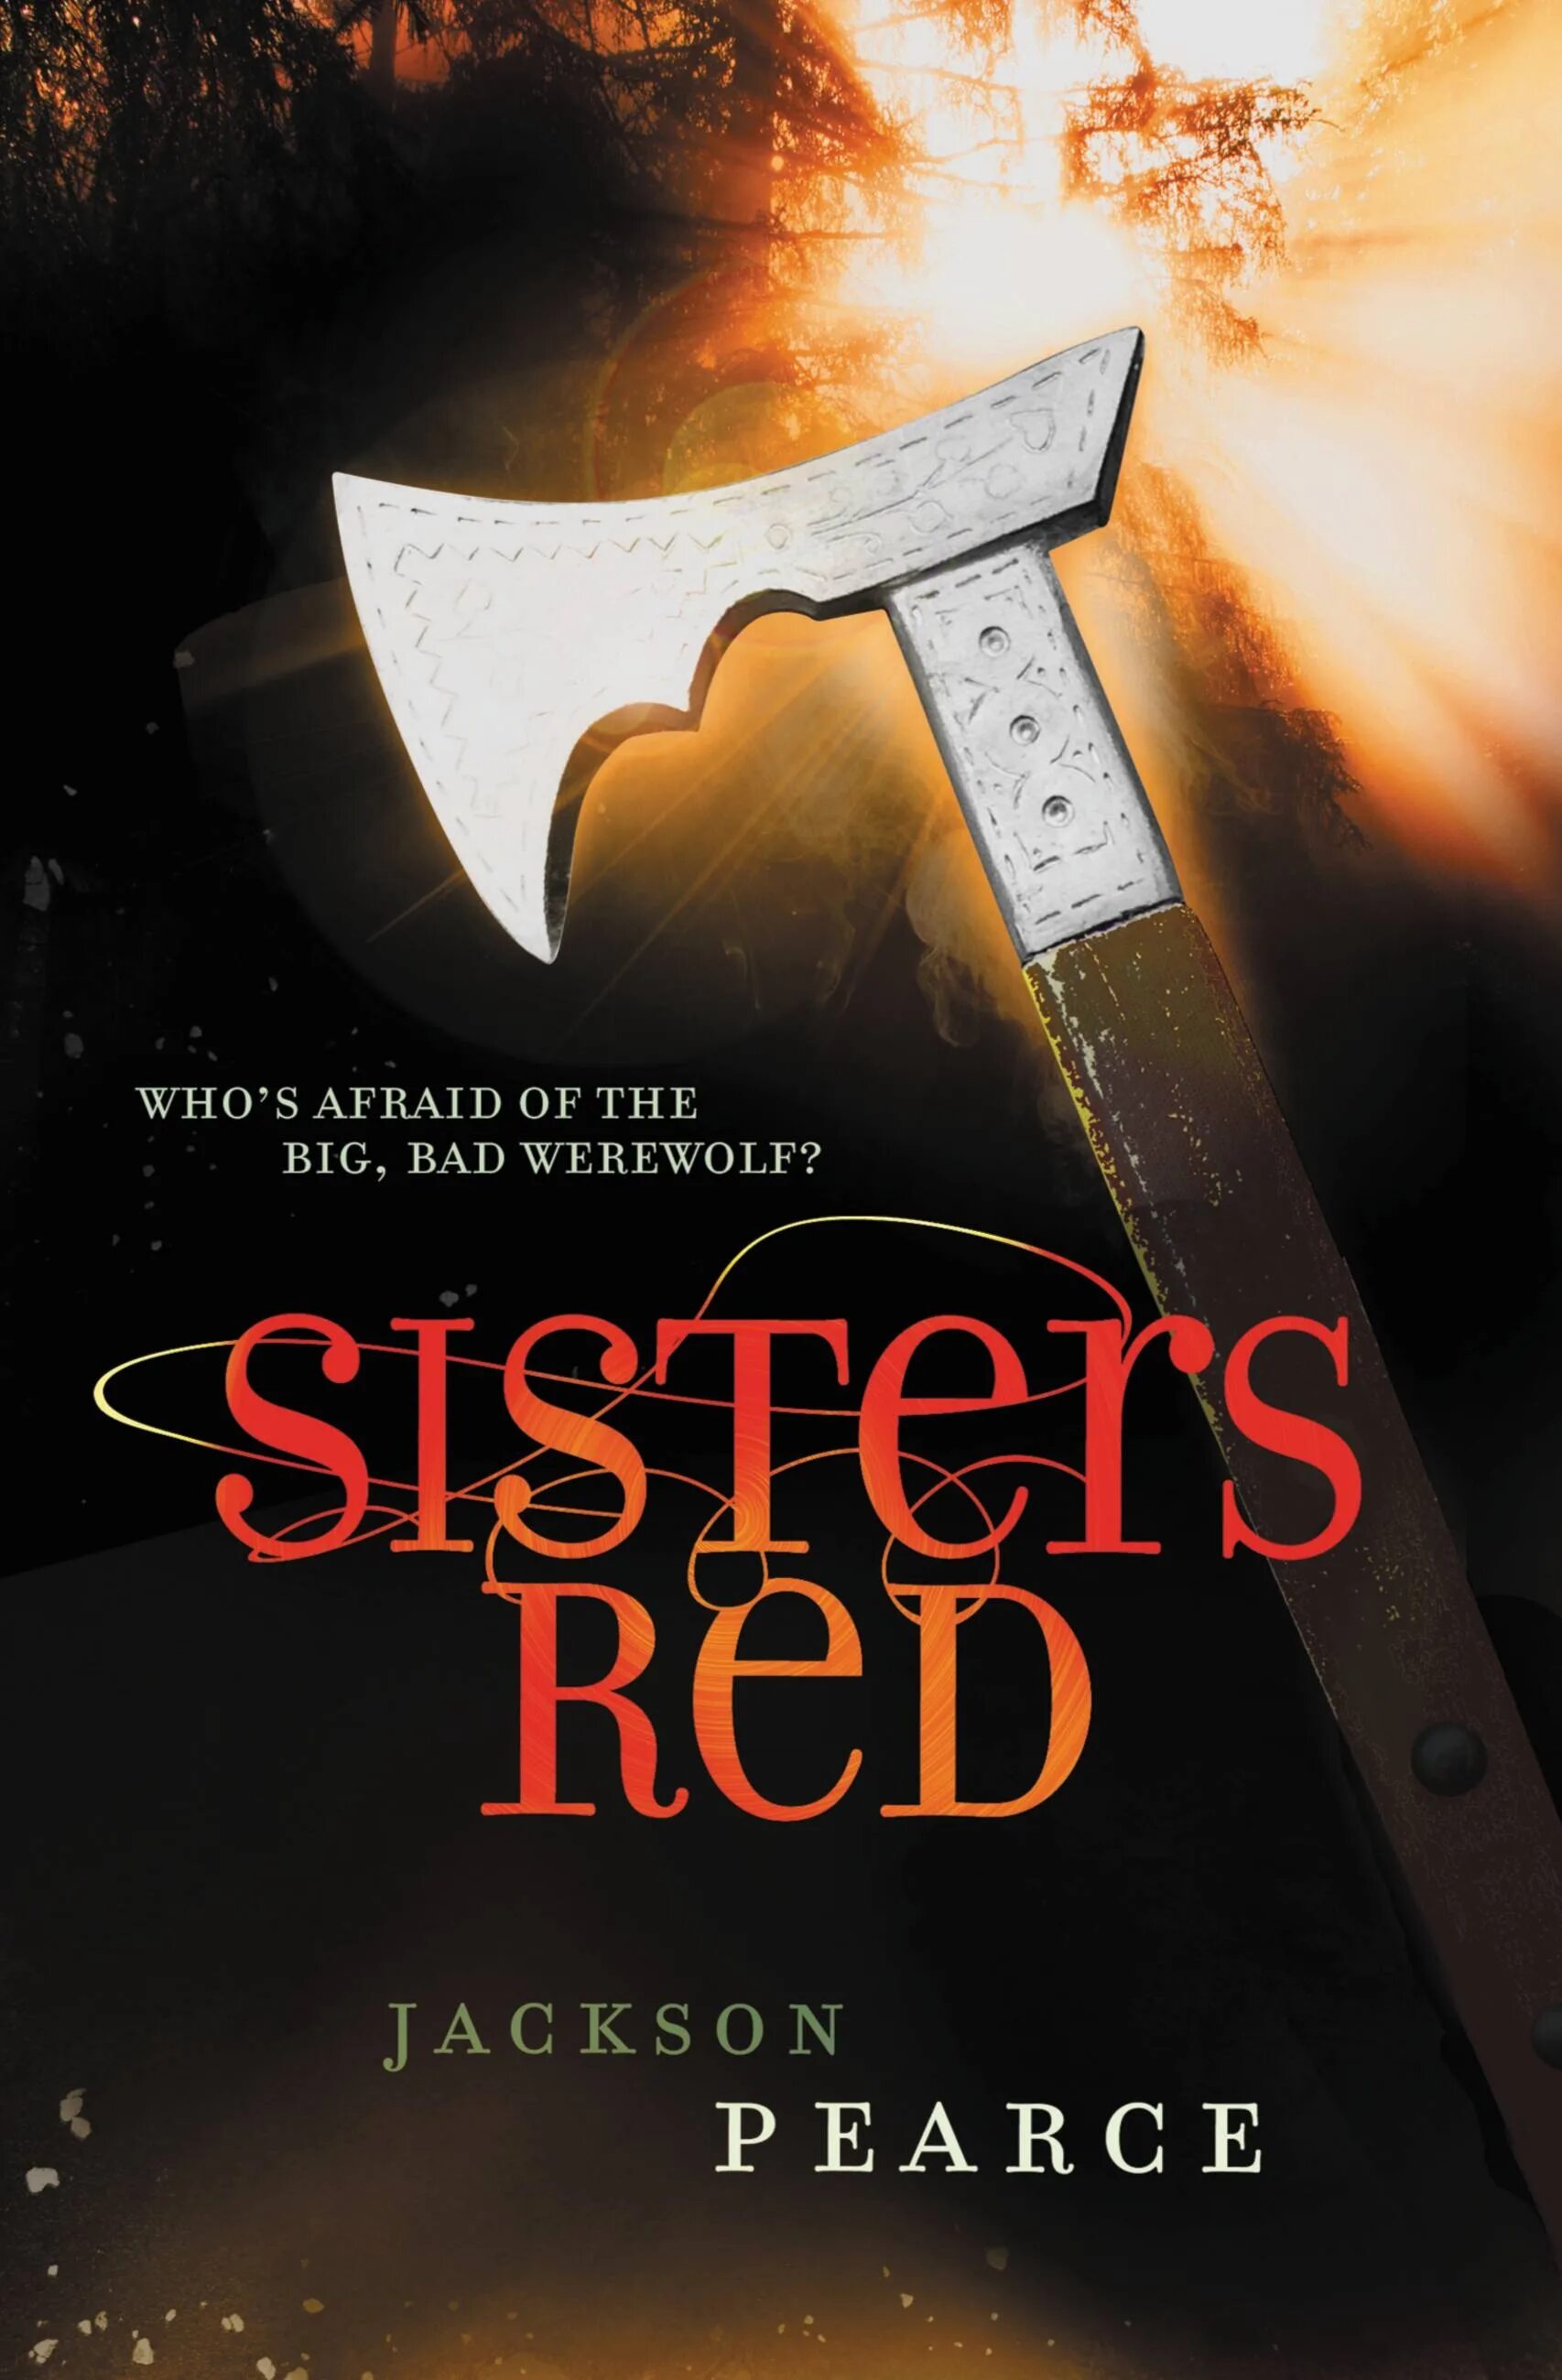 Red Sisterhood. Sister Red.